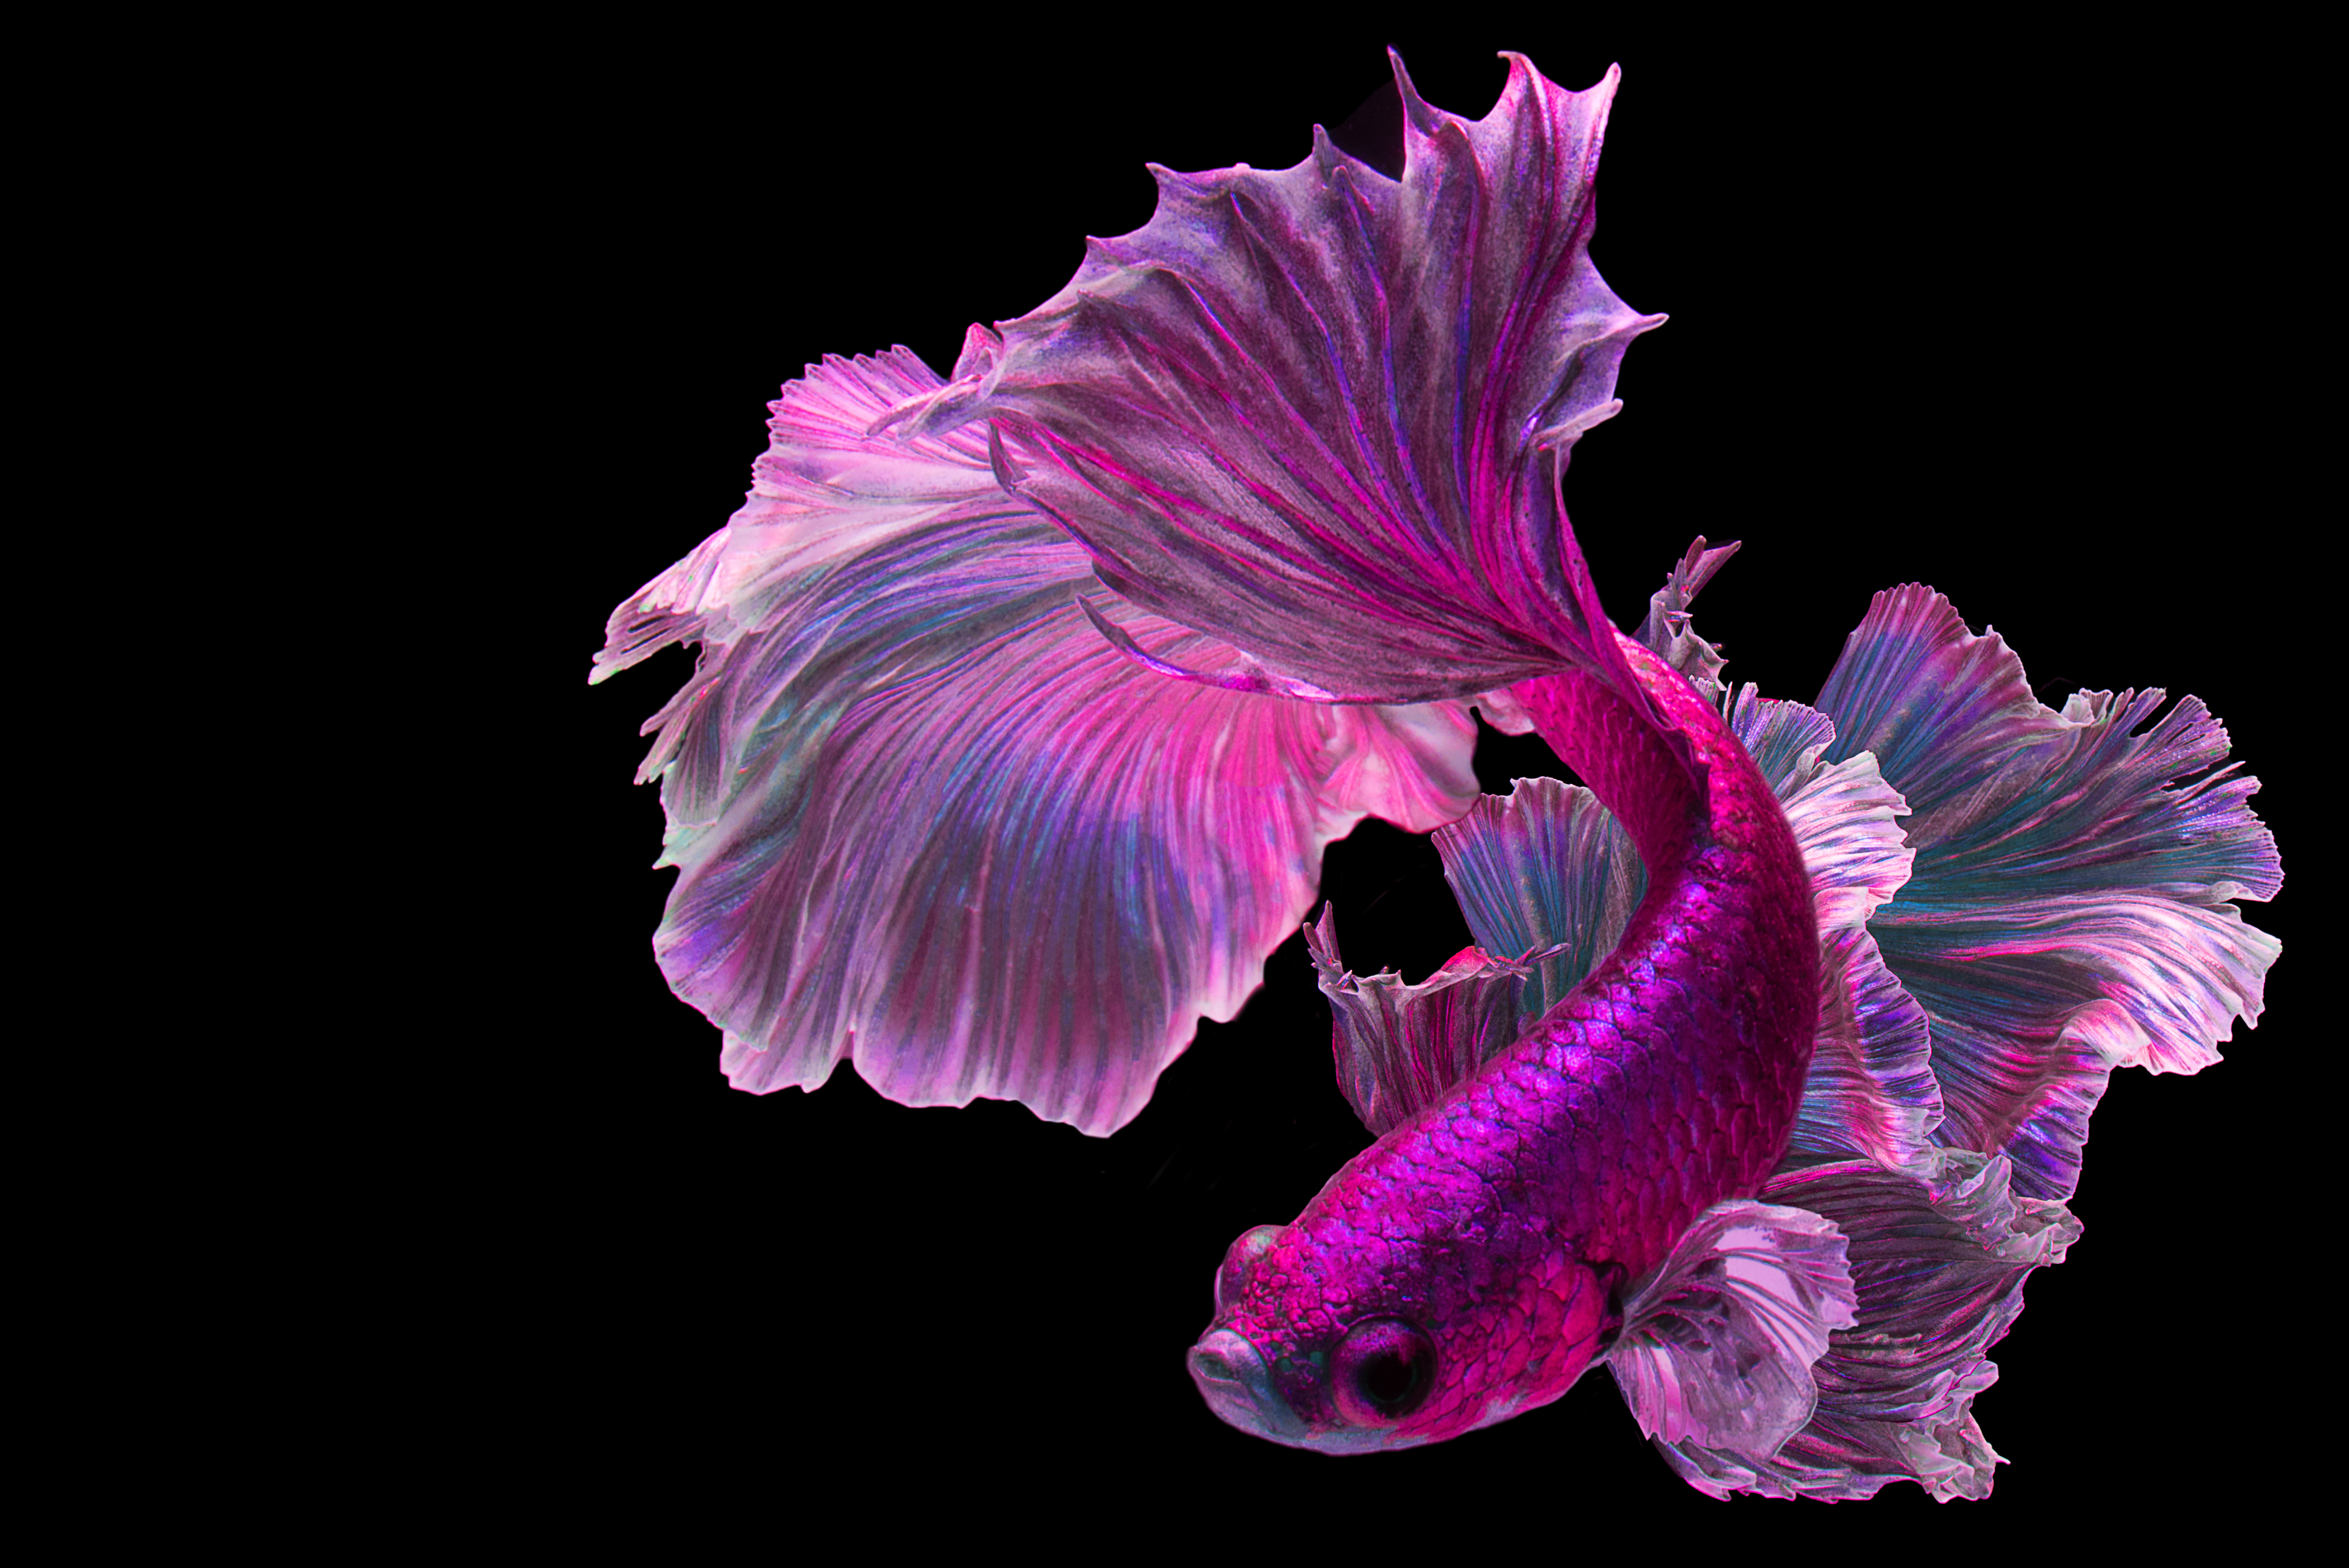 A pink fish